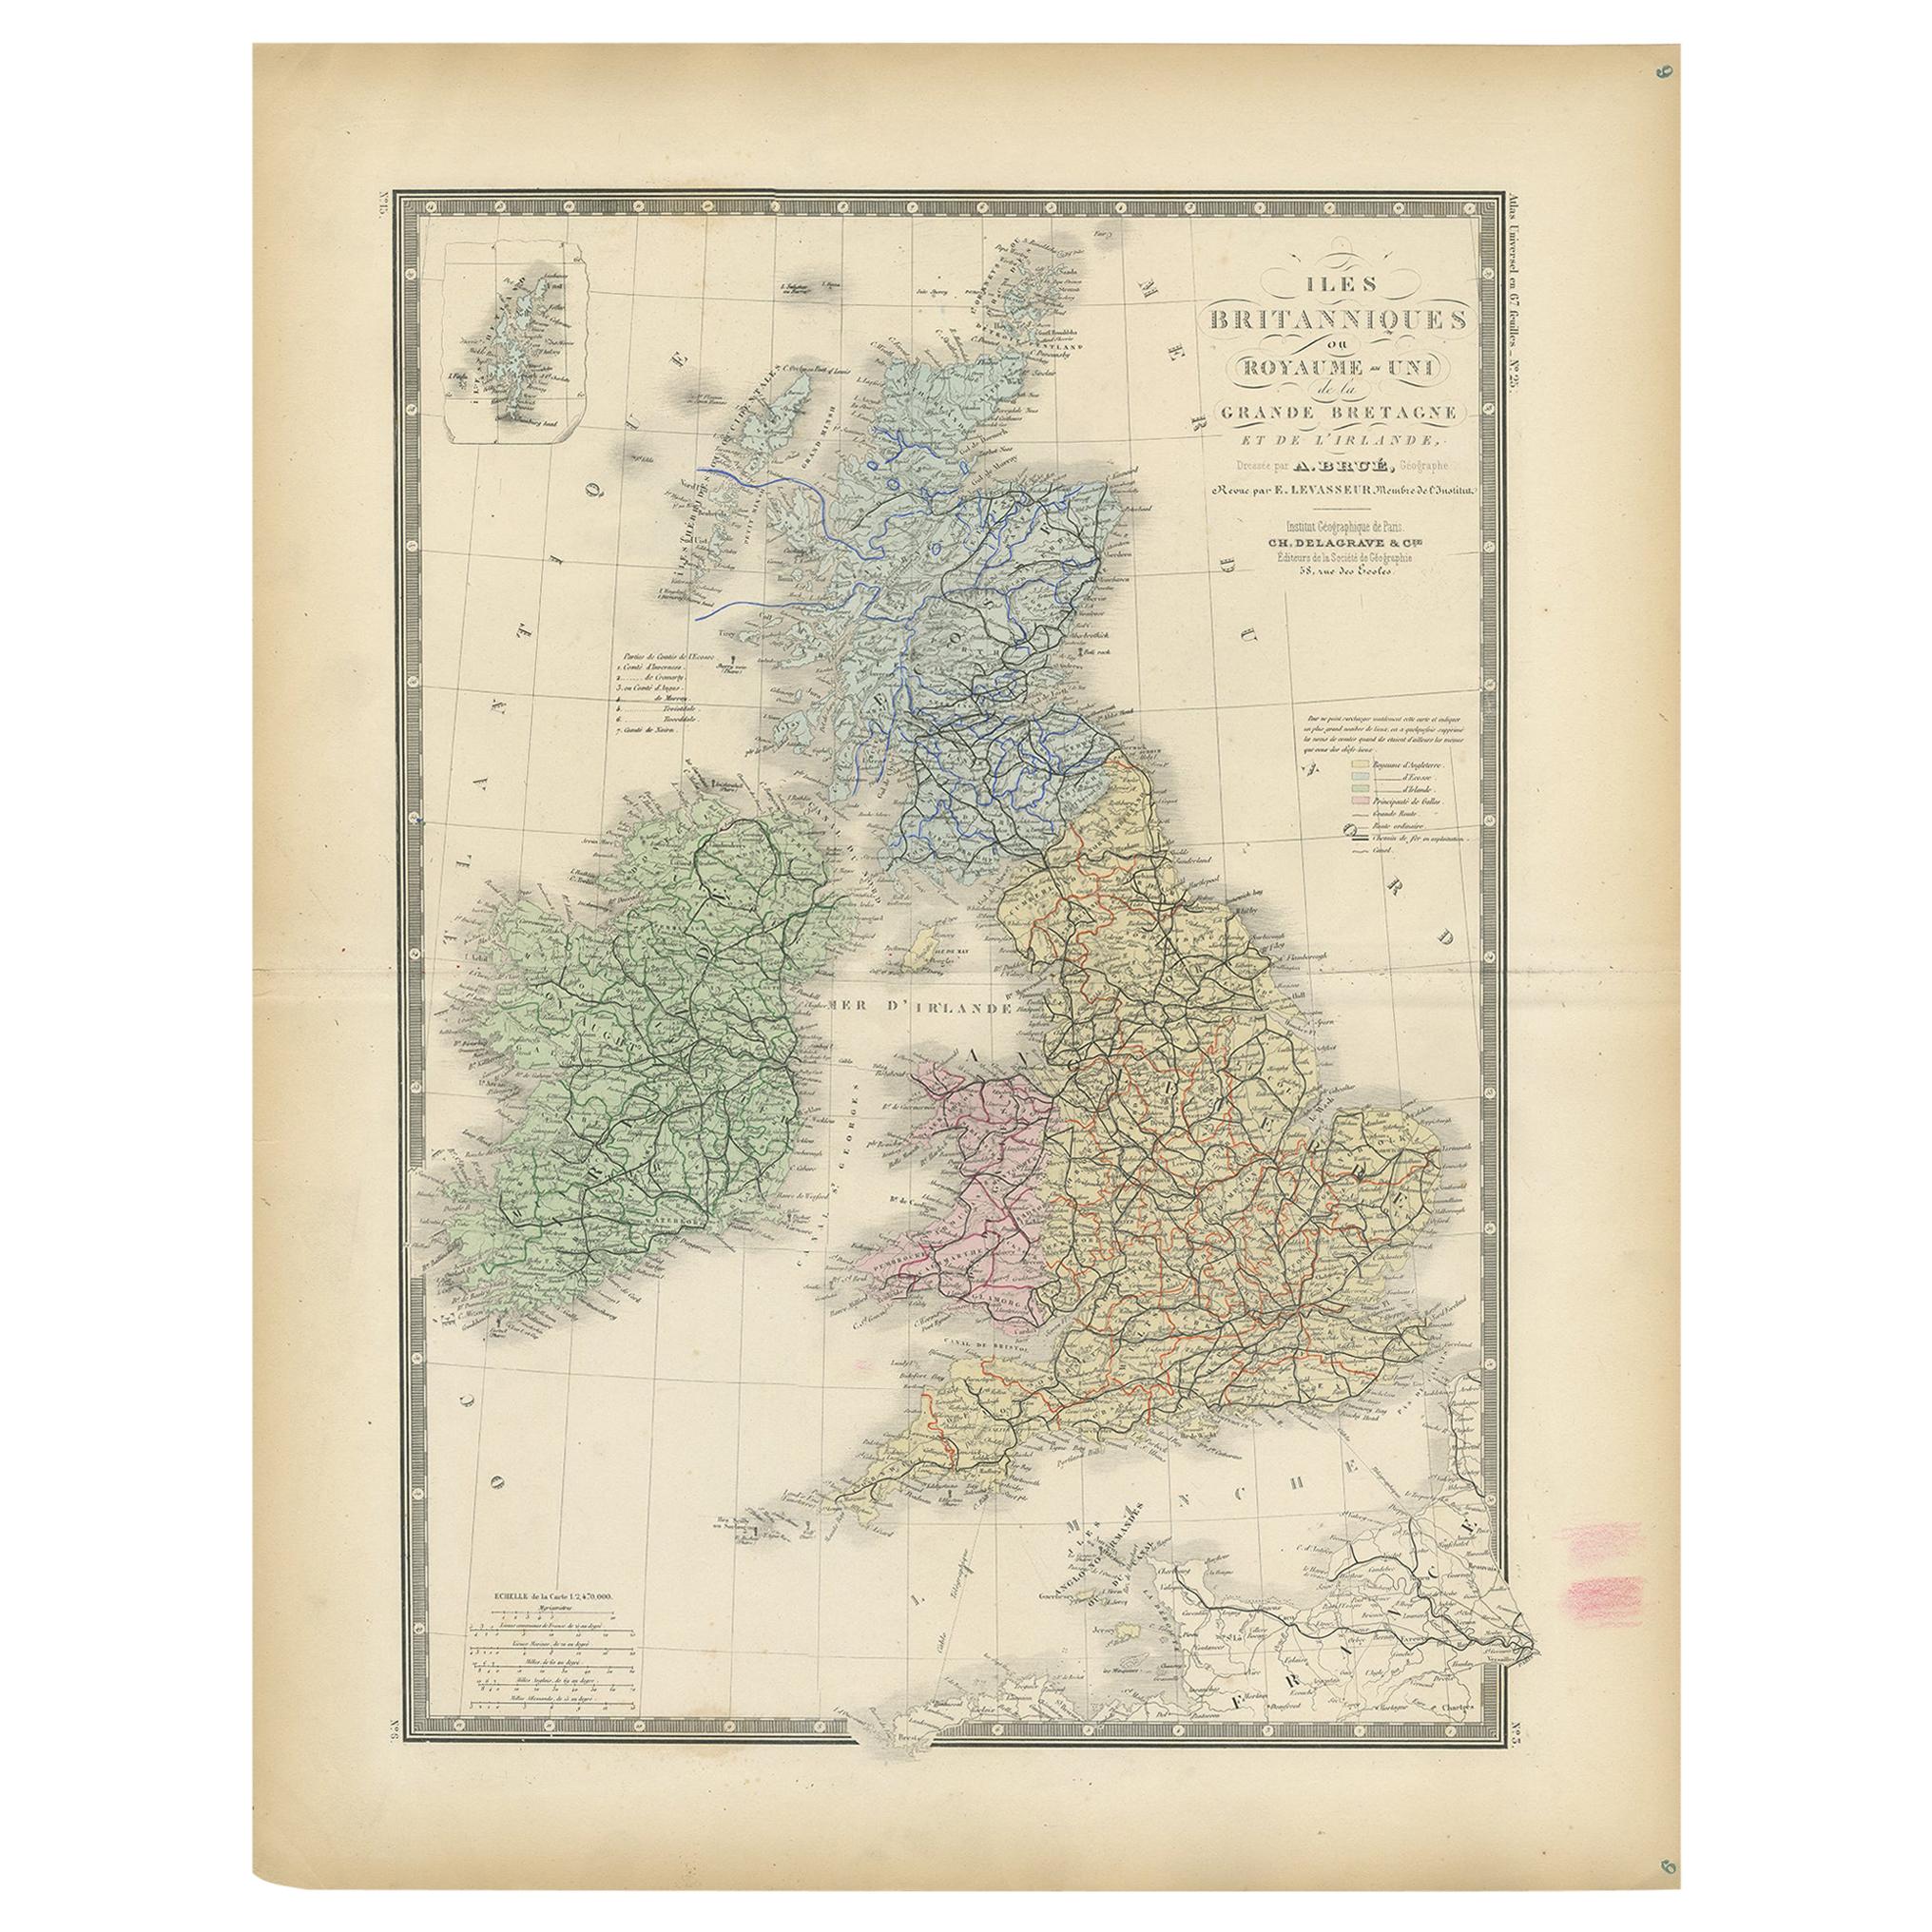 Originale antike Karte des Vereinigten Königreichs und Irlands, veröffentlicht 1875